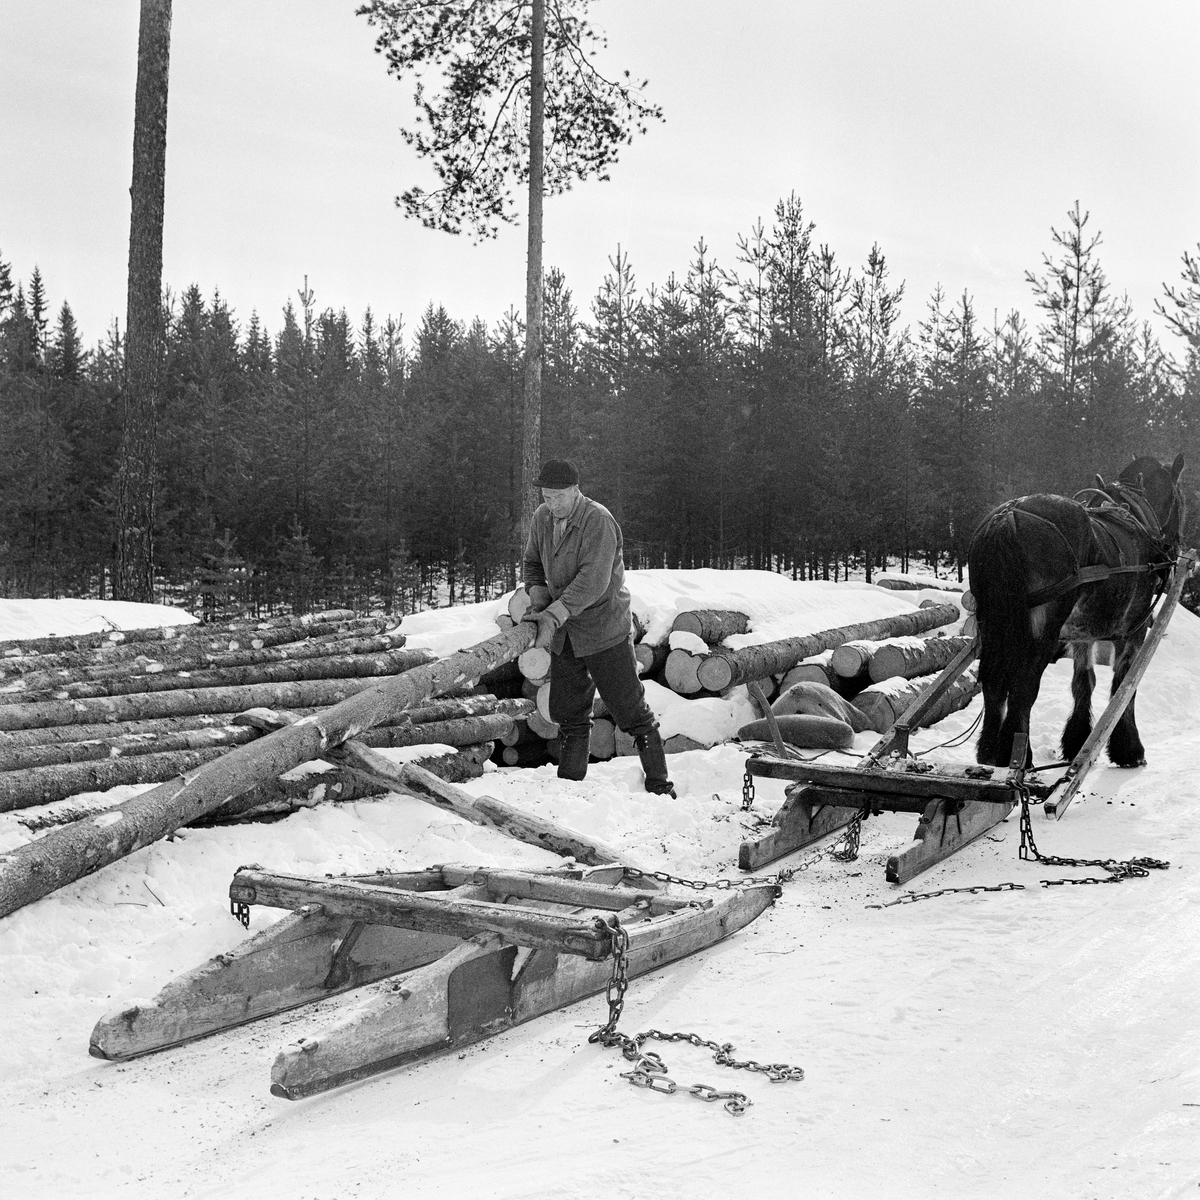 Jørgen Larsen (1919-1988) fra Hernes i Elverum lesser grantømmer i Stavåsen, Elverum, vinteren 1971.  Bildet viser hvordan tømmerkjøreren fikk stokkene opp på tømmerlunna ved å bruke ei såkalt «kjerring», «lassmerr» eller «lesseknekt», en stokk det er hogd hakk i, og som er lagt skrått mot lunnas midtparti. Hakkene i denne stokken ble brukt som anleggs- og vippepunkter når tømmeret skulle opp på toppen av lunna.  Da dette fotografiet ble tatt arbeidet Jørgen Larsen med å få den siste stokken opp på lunna.  I forgrunnen står en tom tømmerrustning, en todelt tømmerslede.  Den bakerste sleden – «geita» – var litt kraftigere enn «bukken» foran, for det var den som skulle bære størstedelen av lasstyngden.  Bukken hadde en dreibar bank, som bidro til å gjøre doningen smidig på svingete og staupete kjøreveger i skogen.  Tømmerkjører Jørgen Larsen var kledd i vadmelsbukse og vindjakke.  Han hadde skjoldlue på hodet og langskaftete gummistøvler på beina.